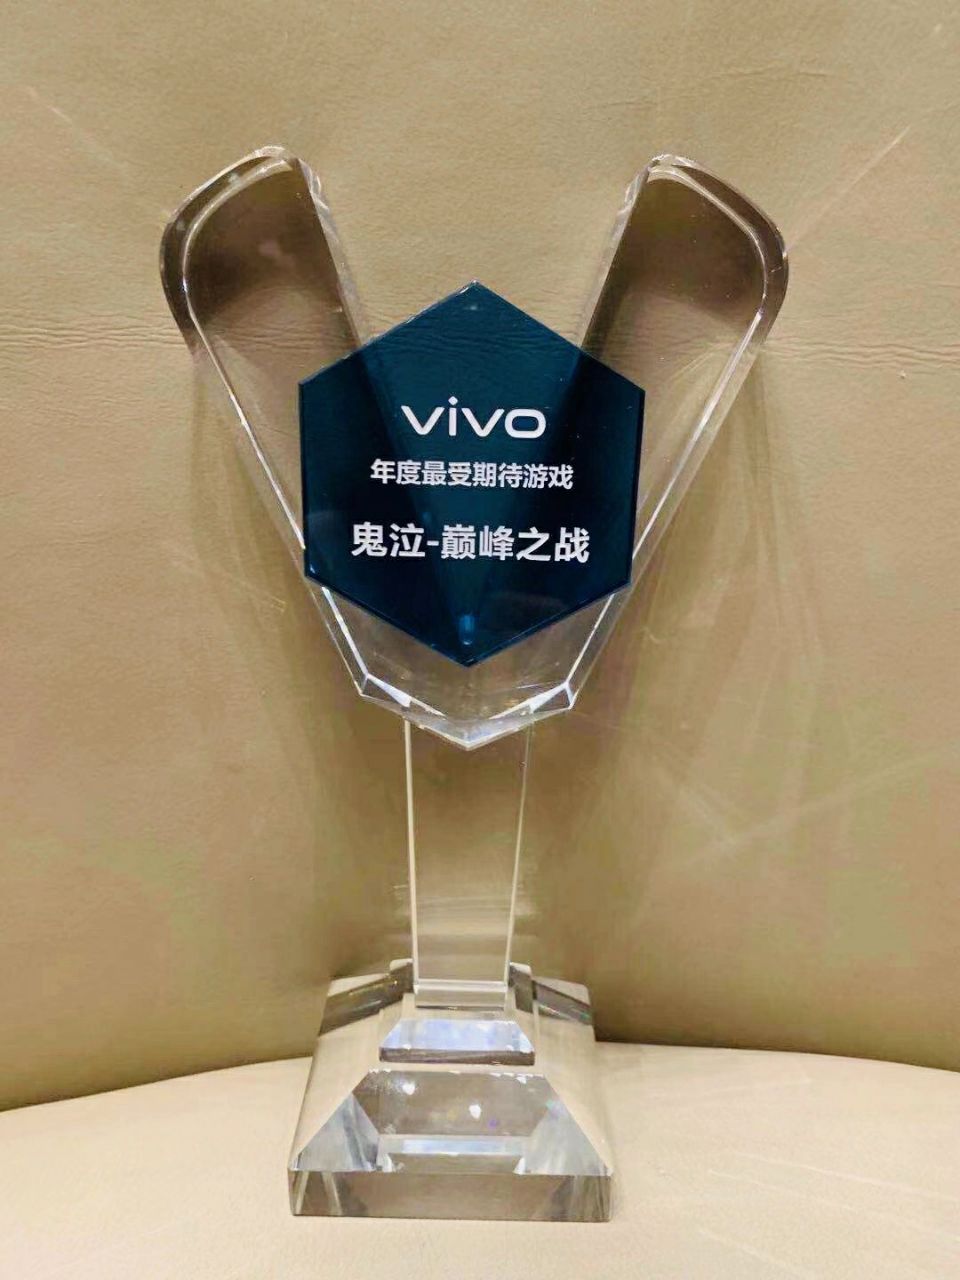 《鬼泣-巅峰之战》荣获VIVO 最受期待游戏奖